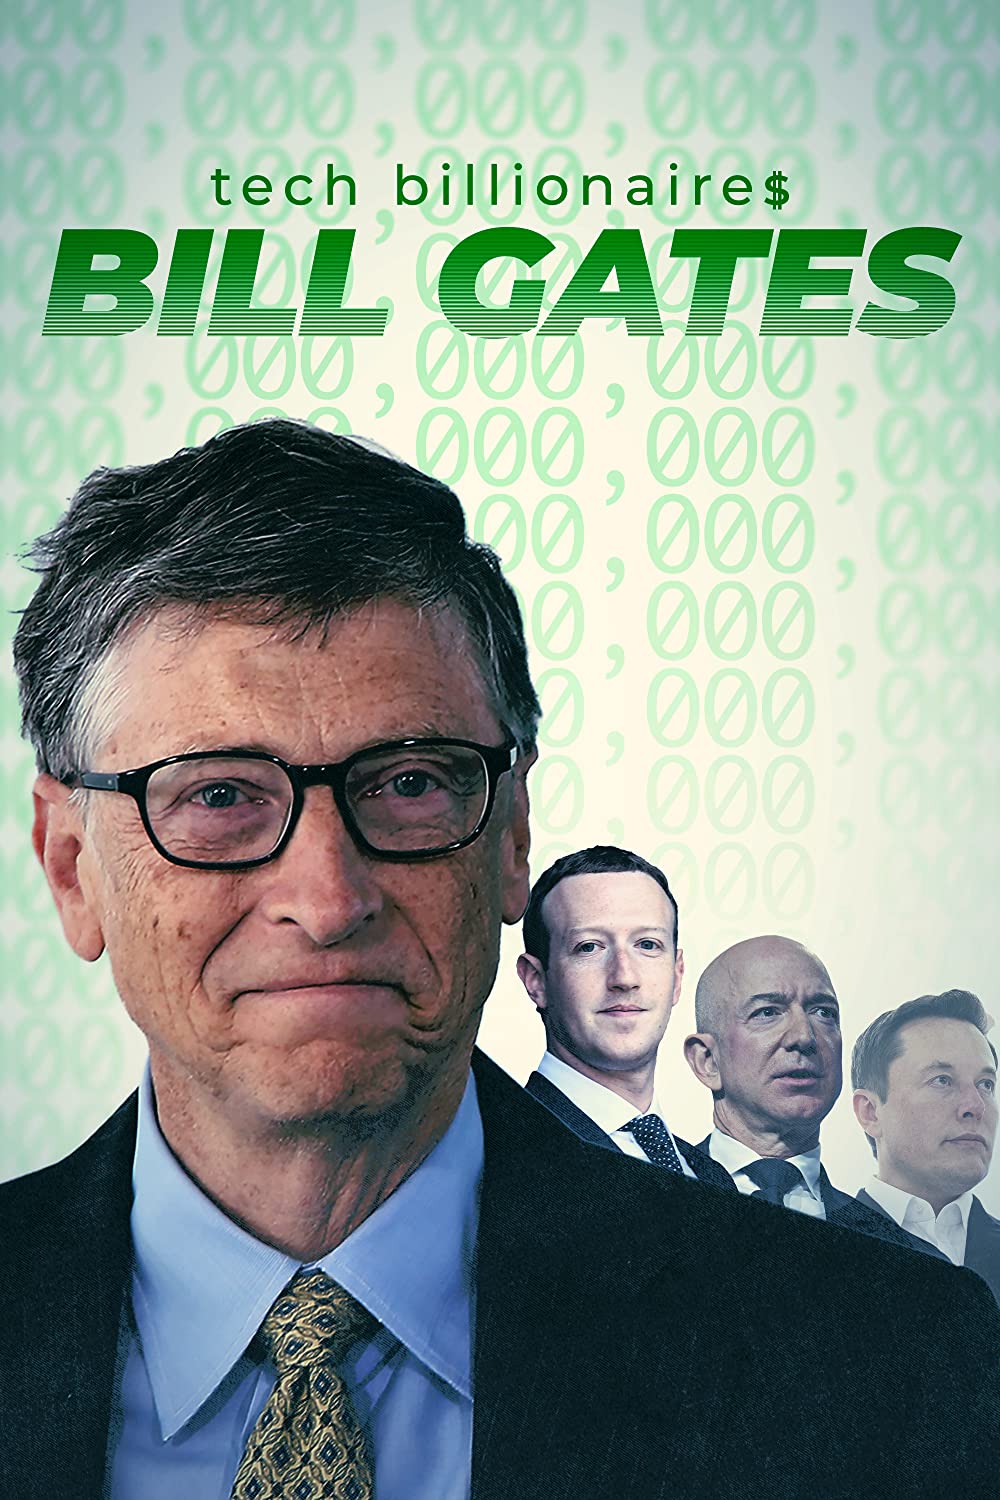 ดูหนังออนไลน์ฟรี Tech Billionaires Bill Gates (2021) เทค บิลเลียนเนียร์ บิล เกทส